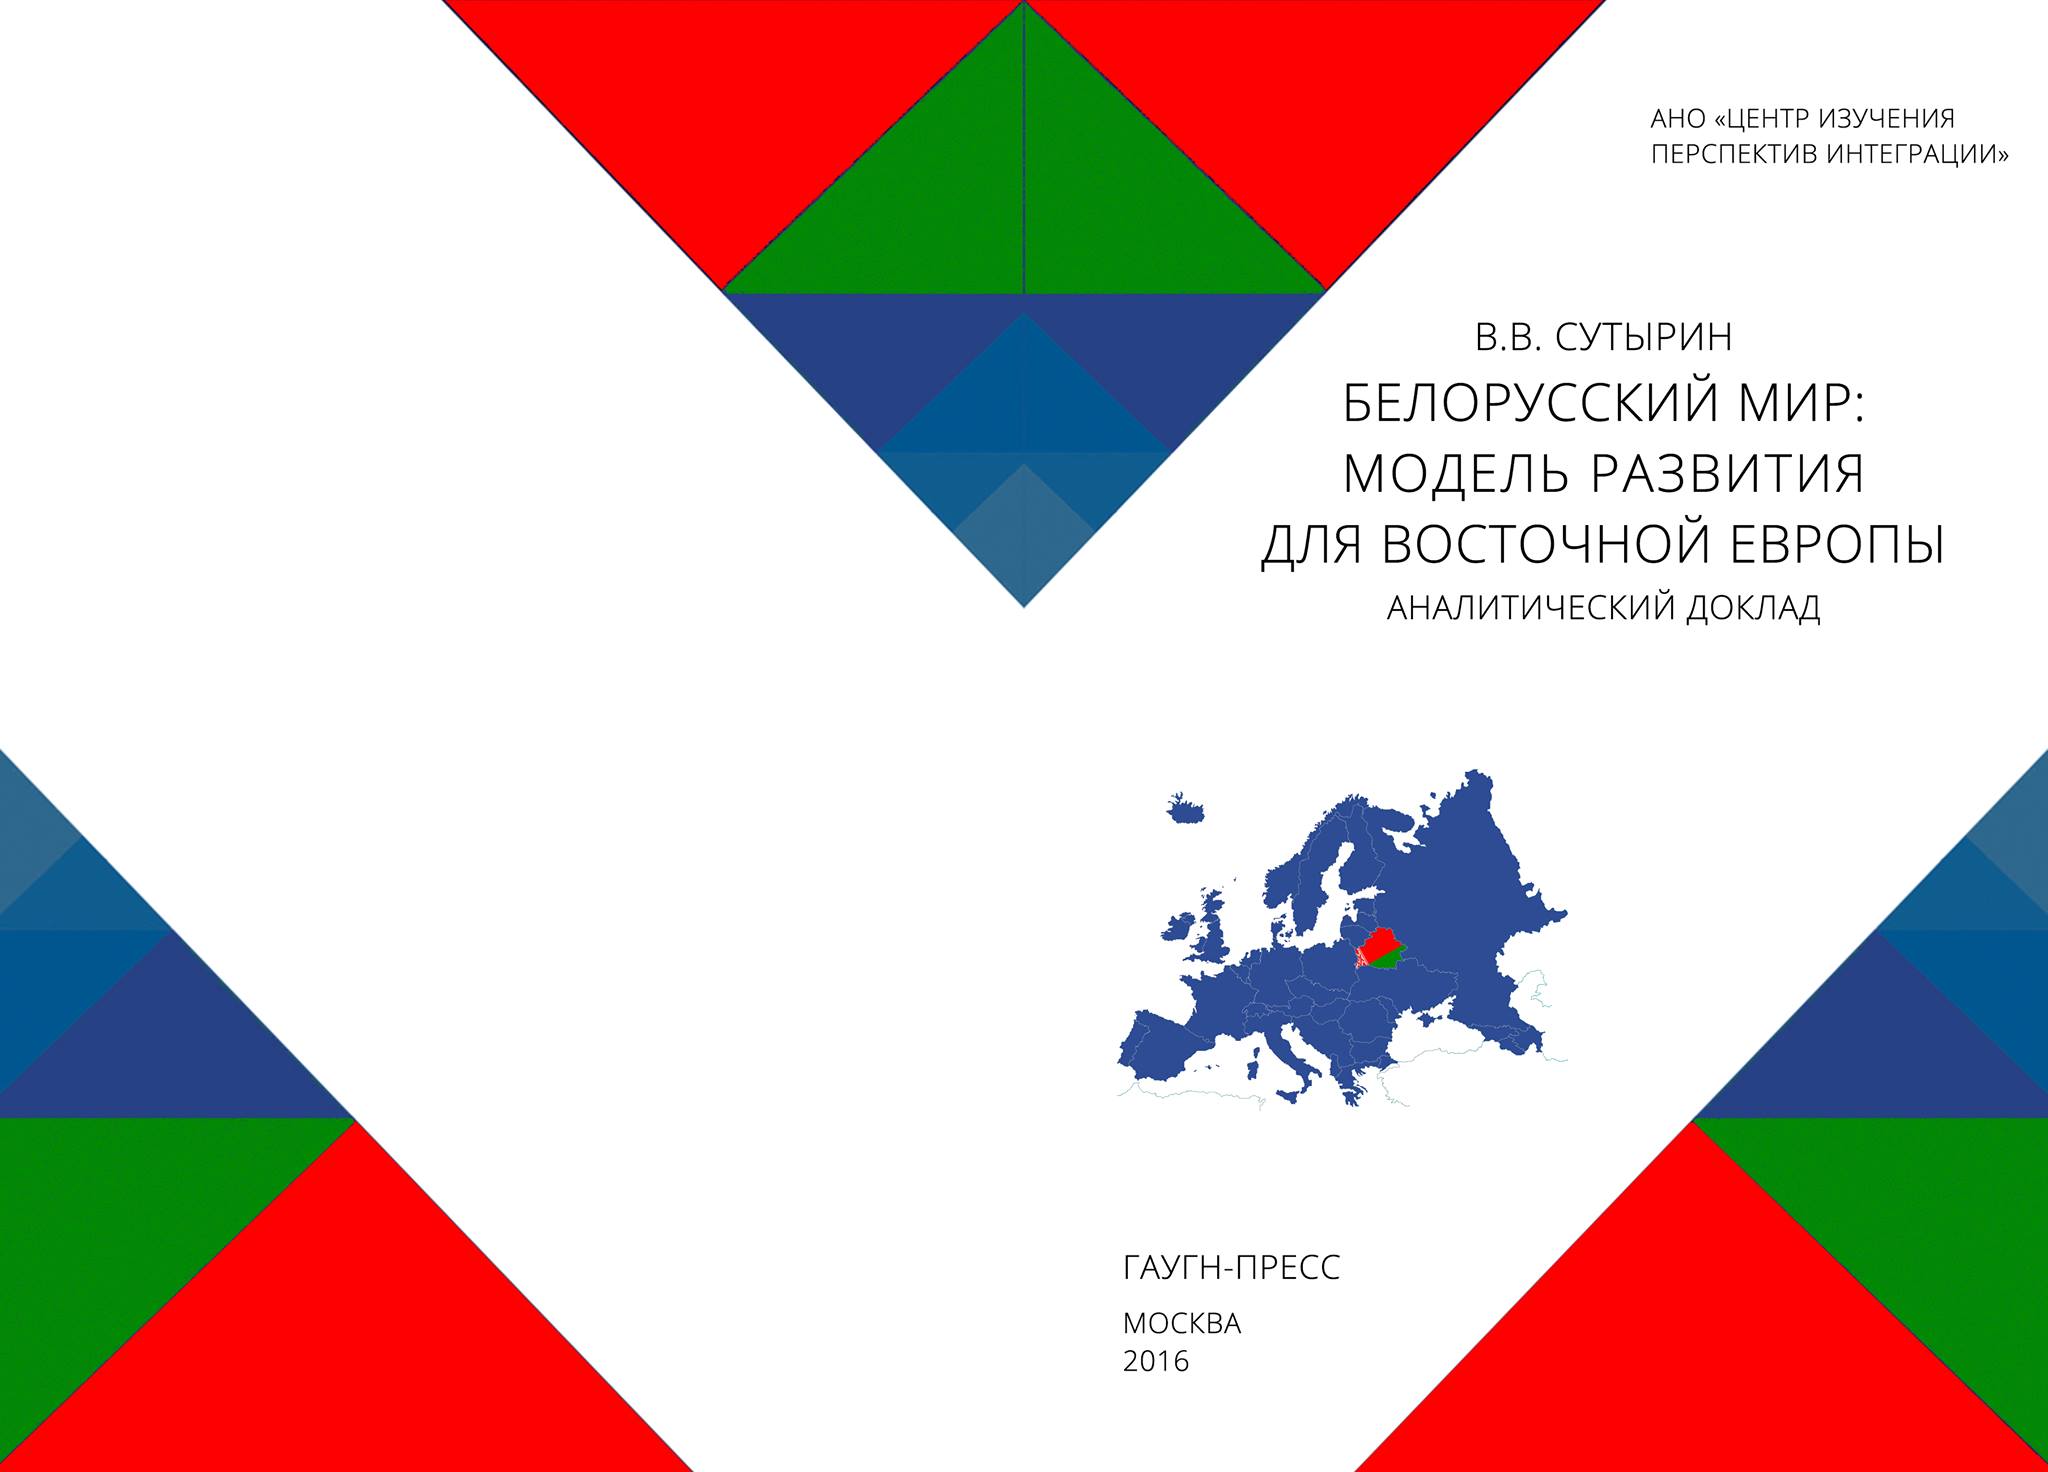 Белорусский мир: модель развития для Восточной Европы